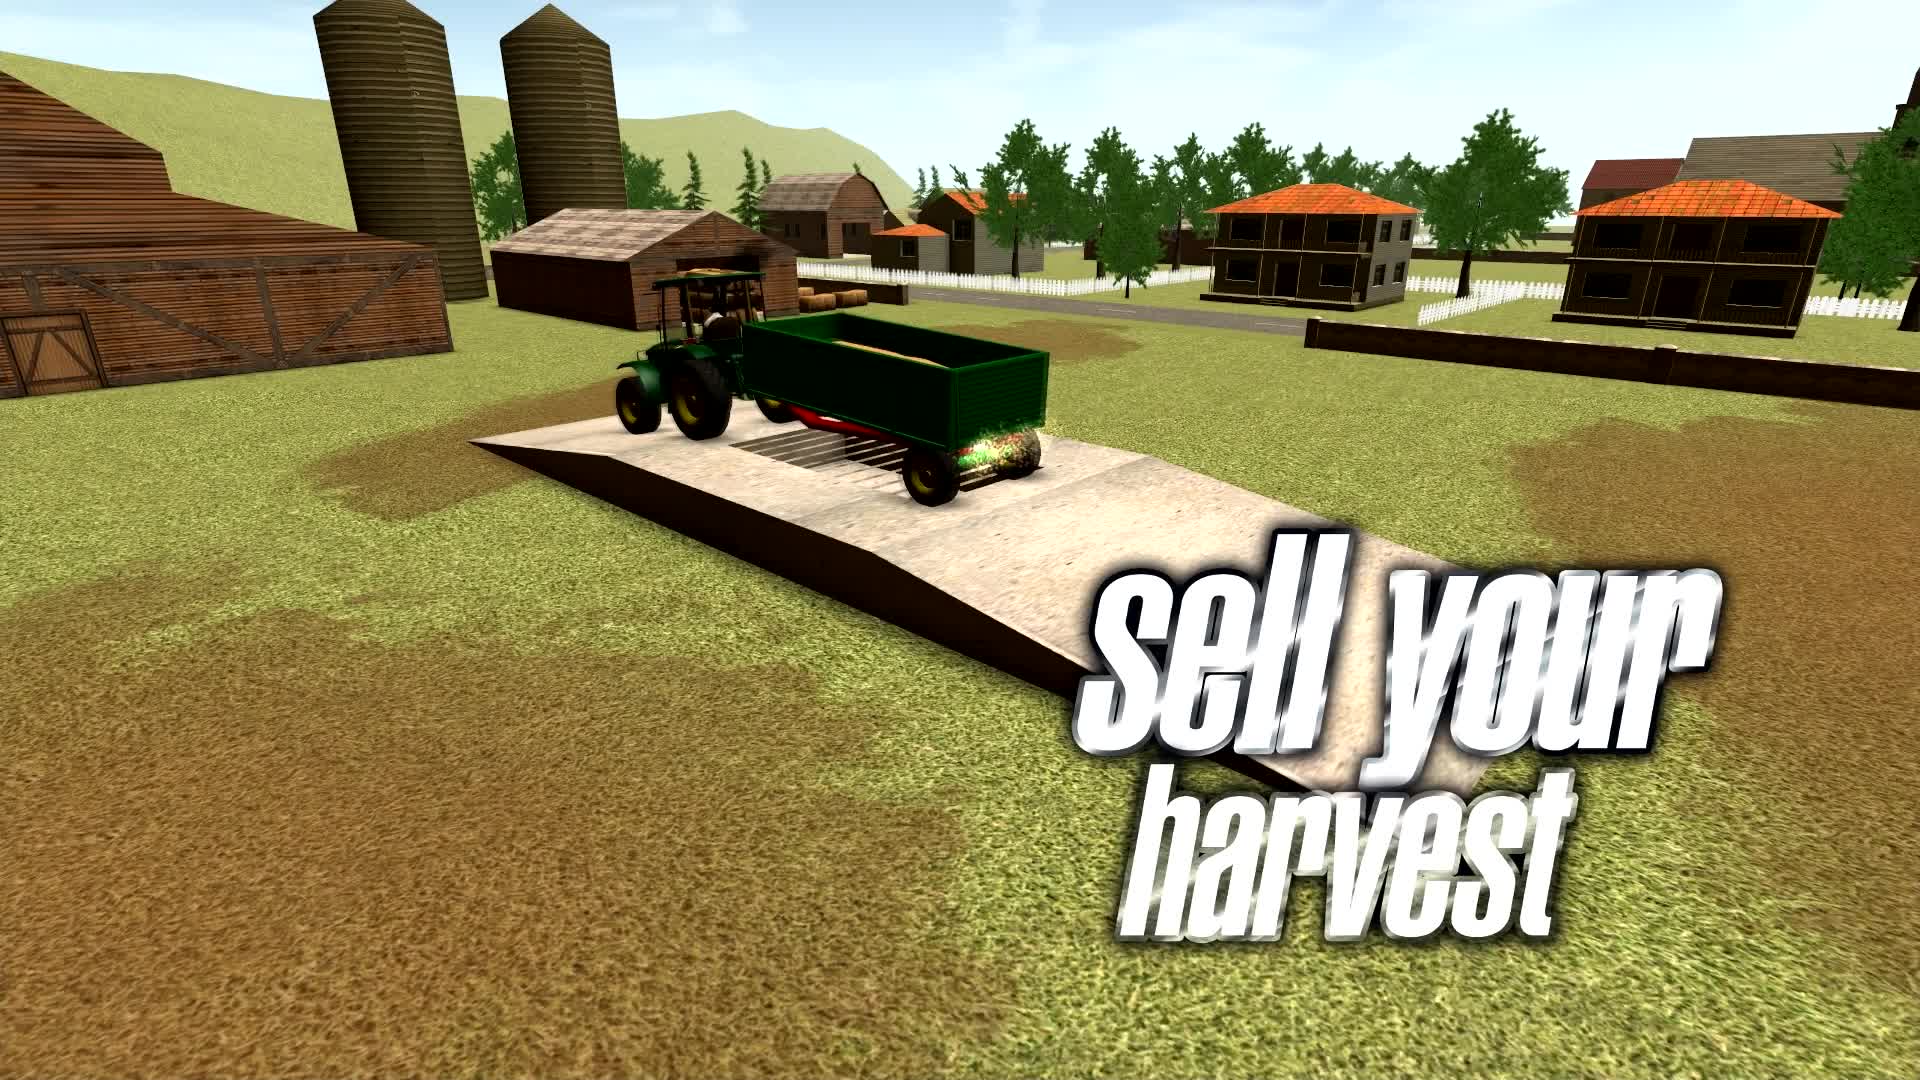 Farming Simulator 23 Apk Data de lançamento e novo trailer